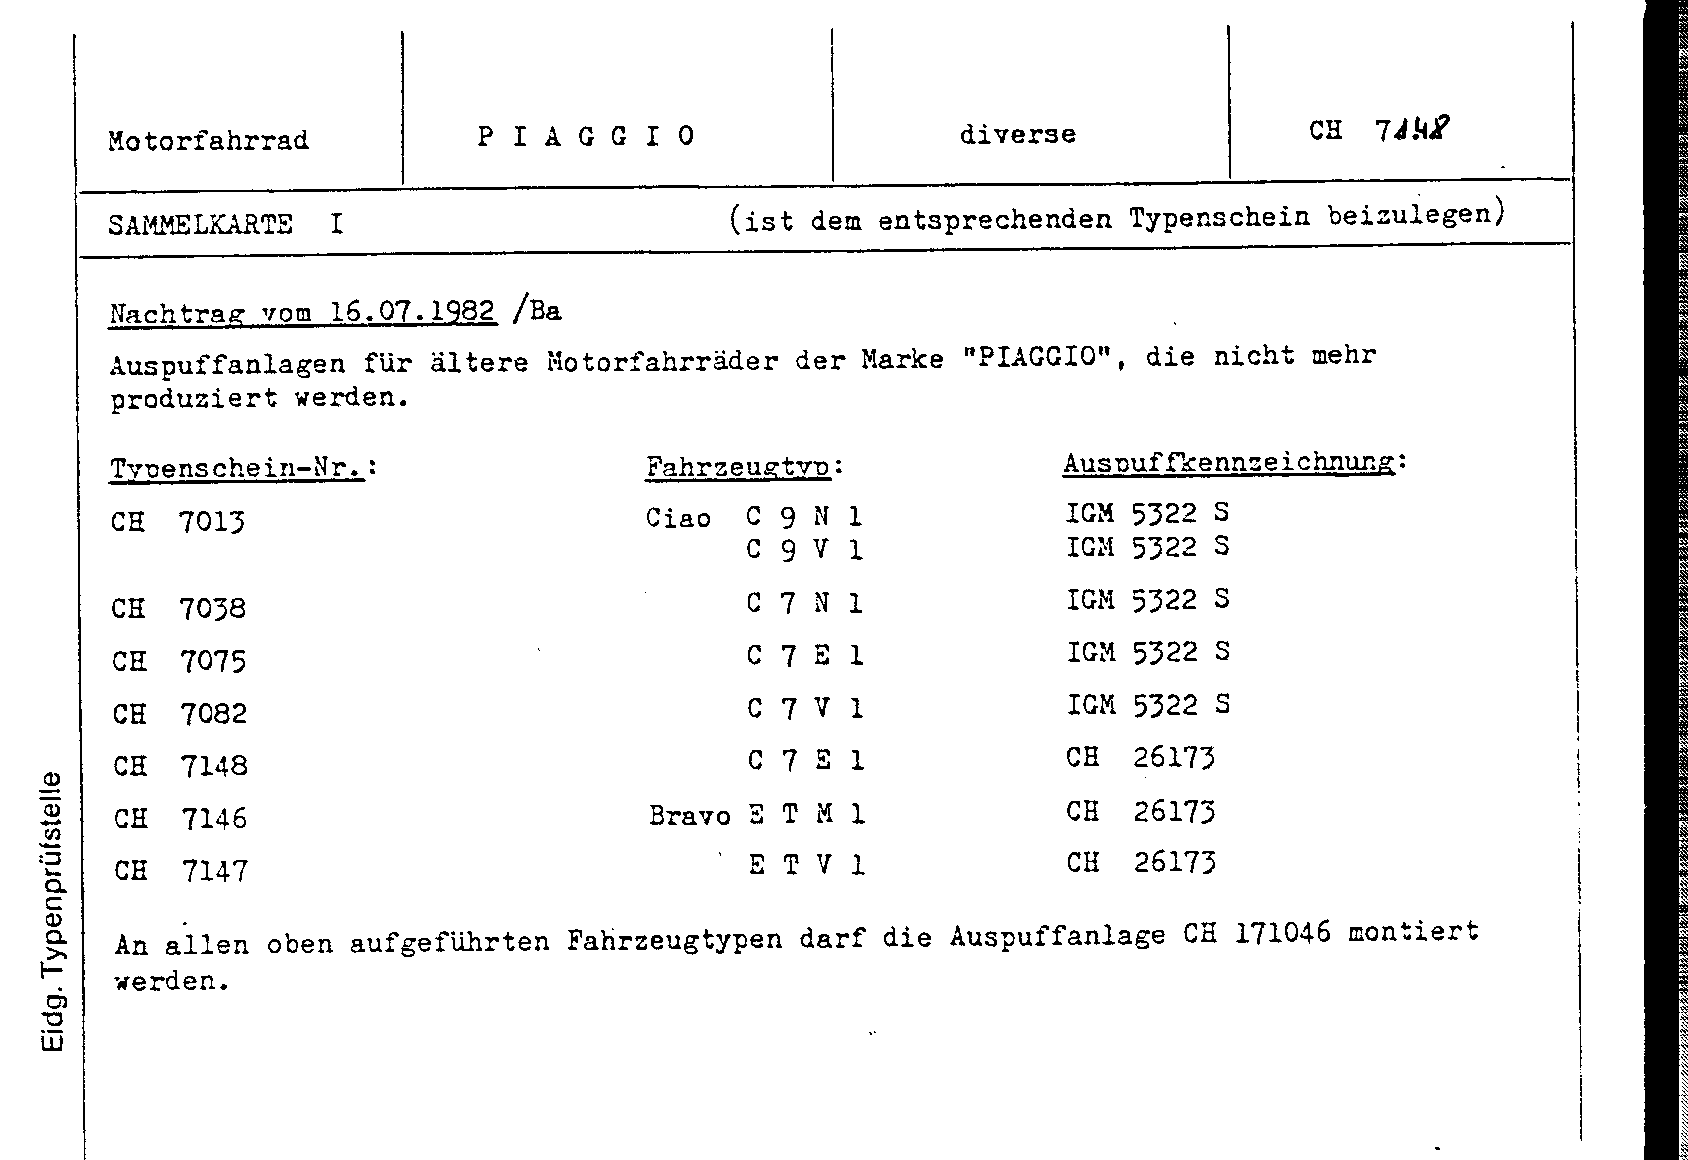 Swiss Certificate of Conformity 7148 German Page 4 (TG.DE.7148.4.png)